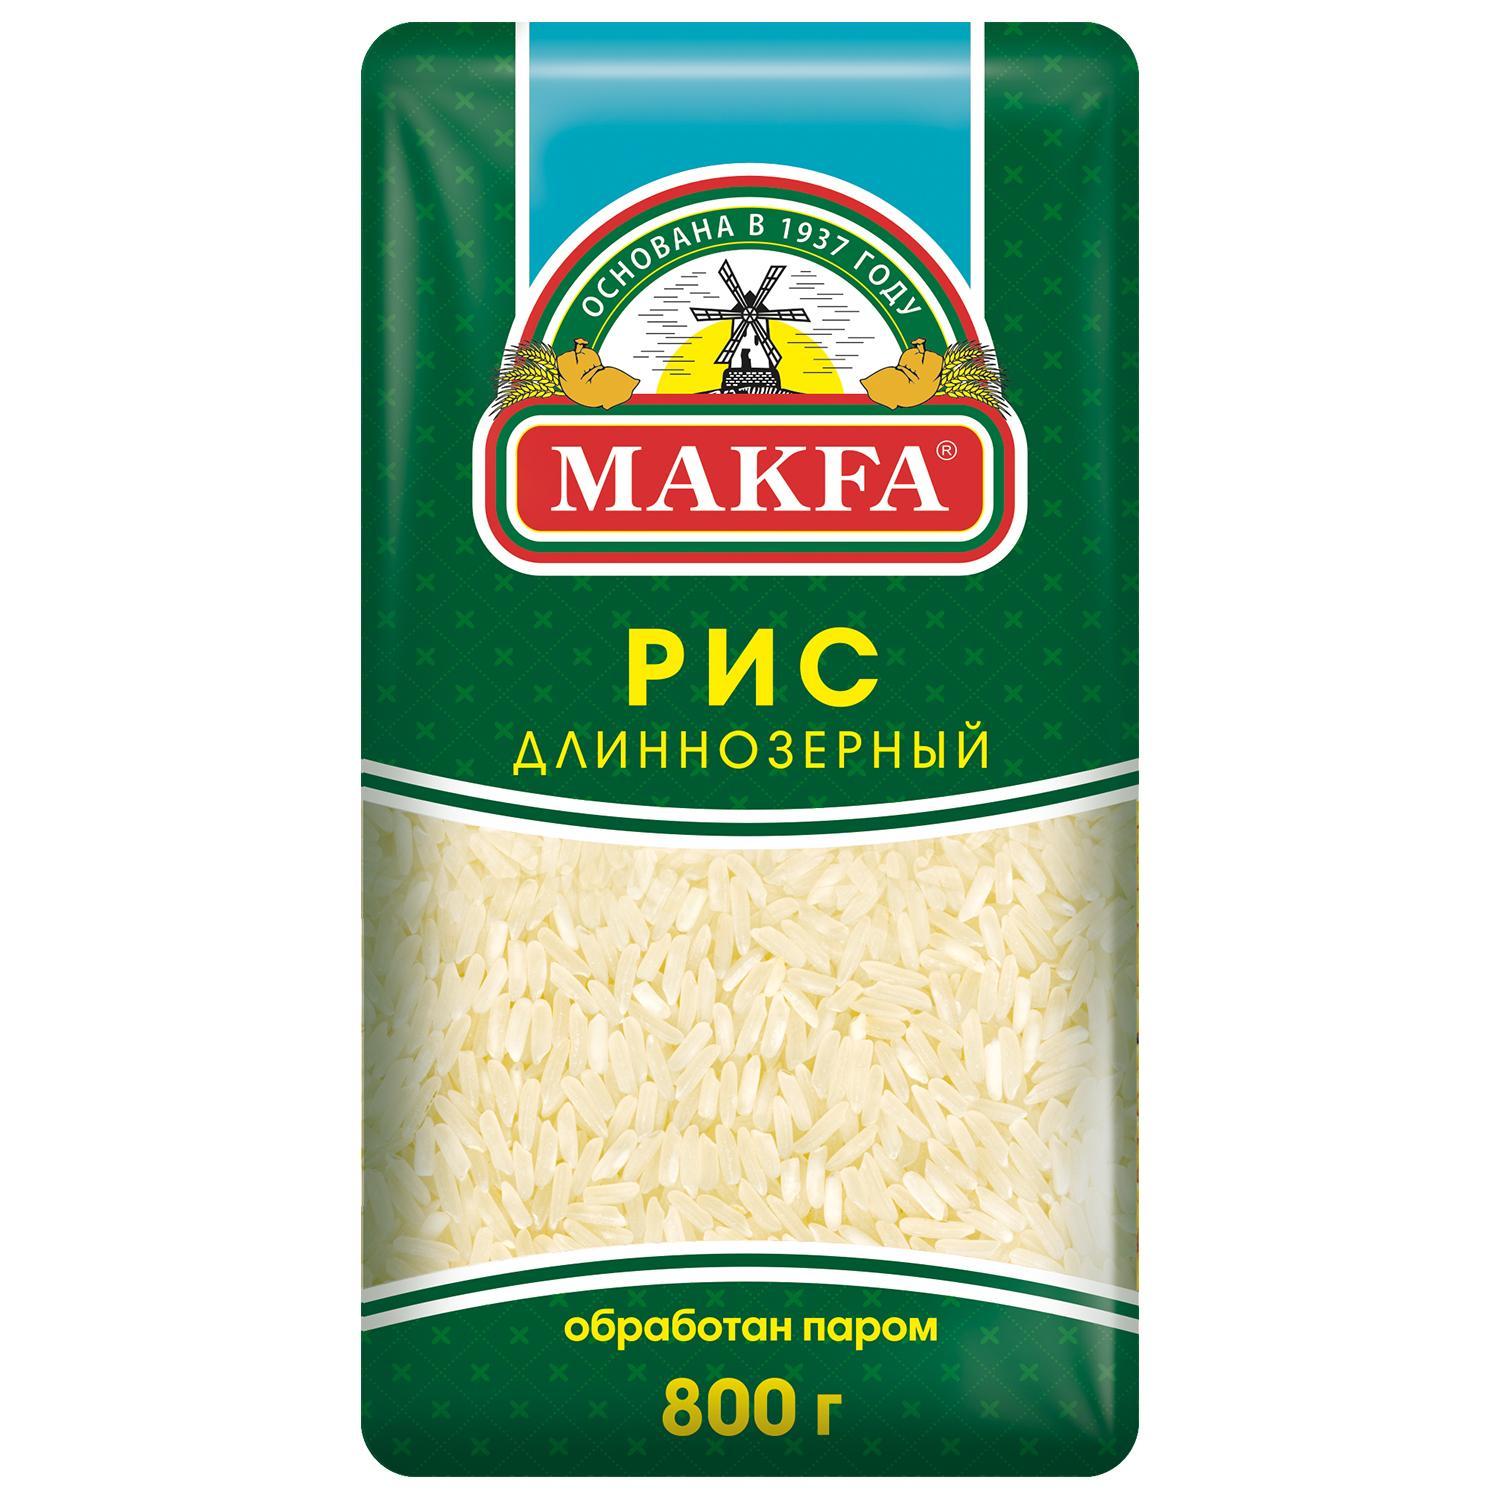 Рис длиннозерный пропаренный, Makfa, 800 гр., флоу-пак